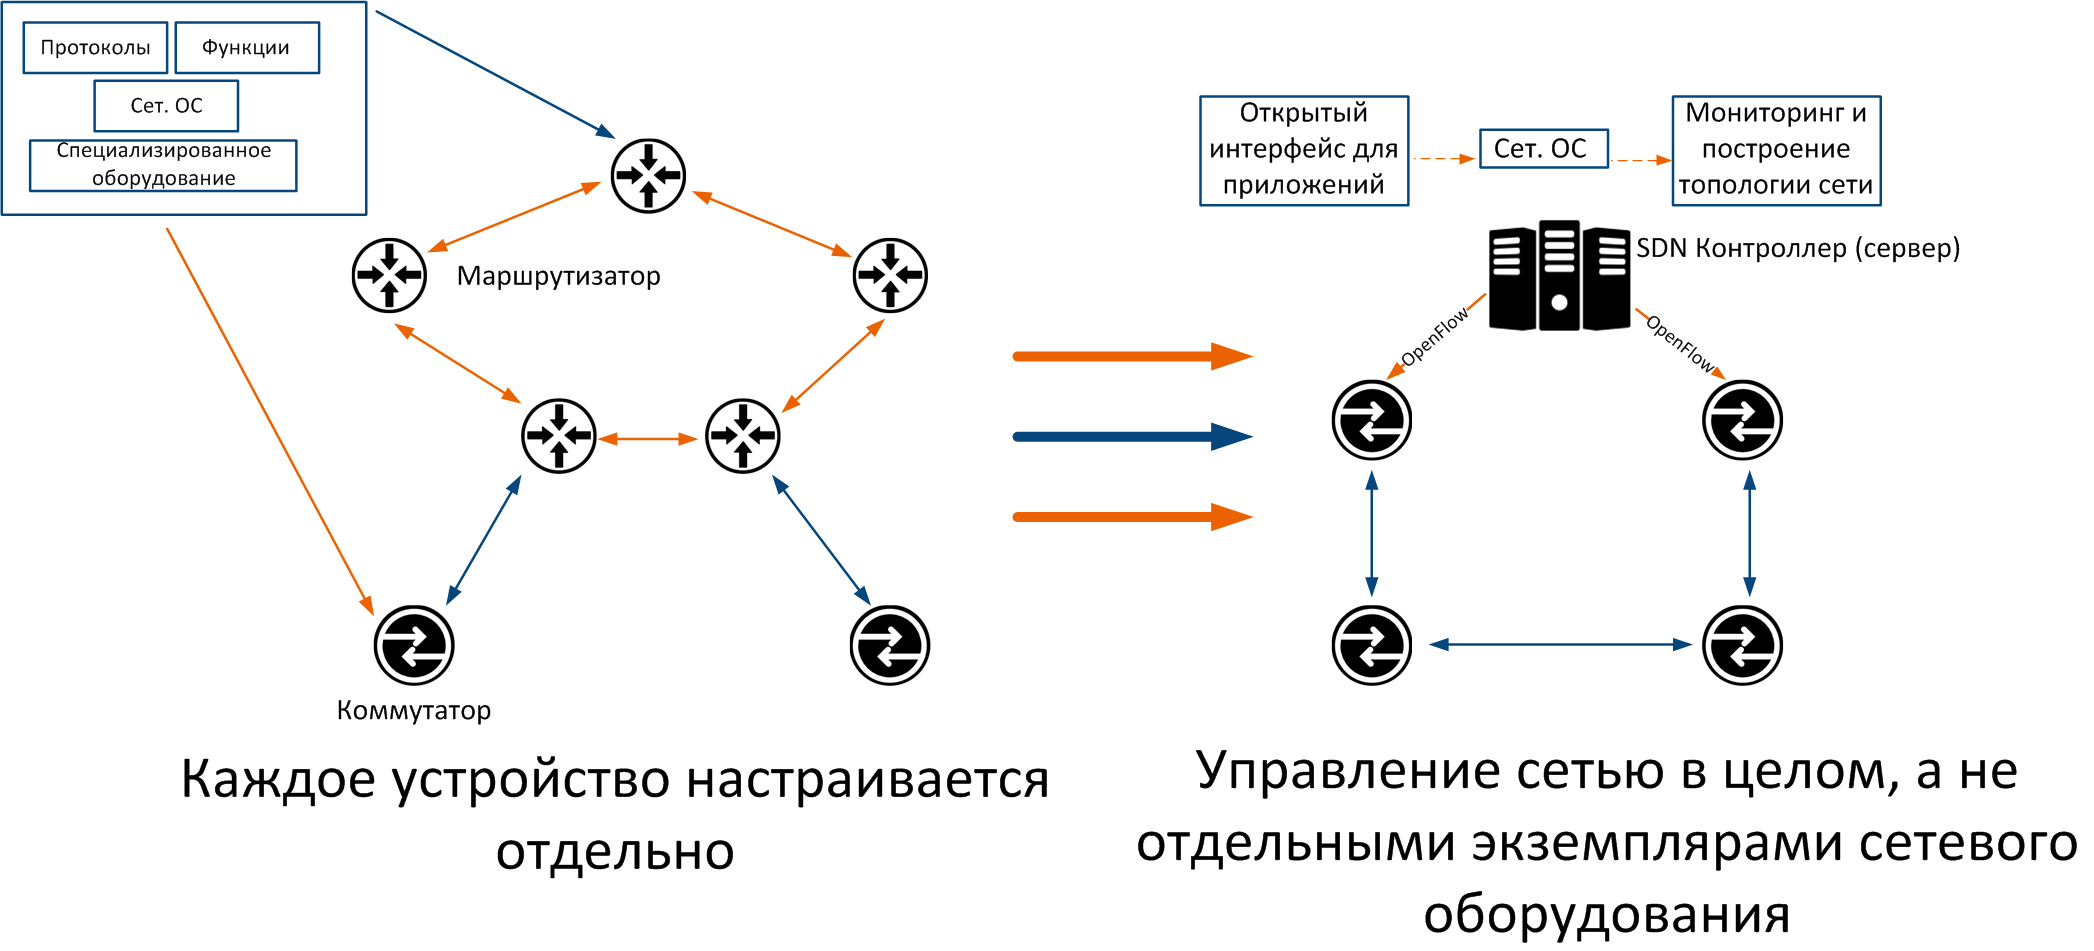 Программно-определяемая сеть - software-defined networking